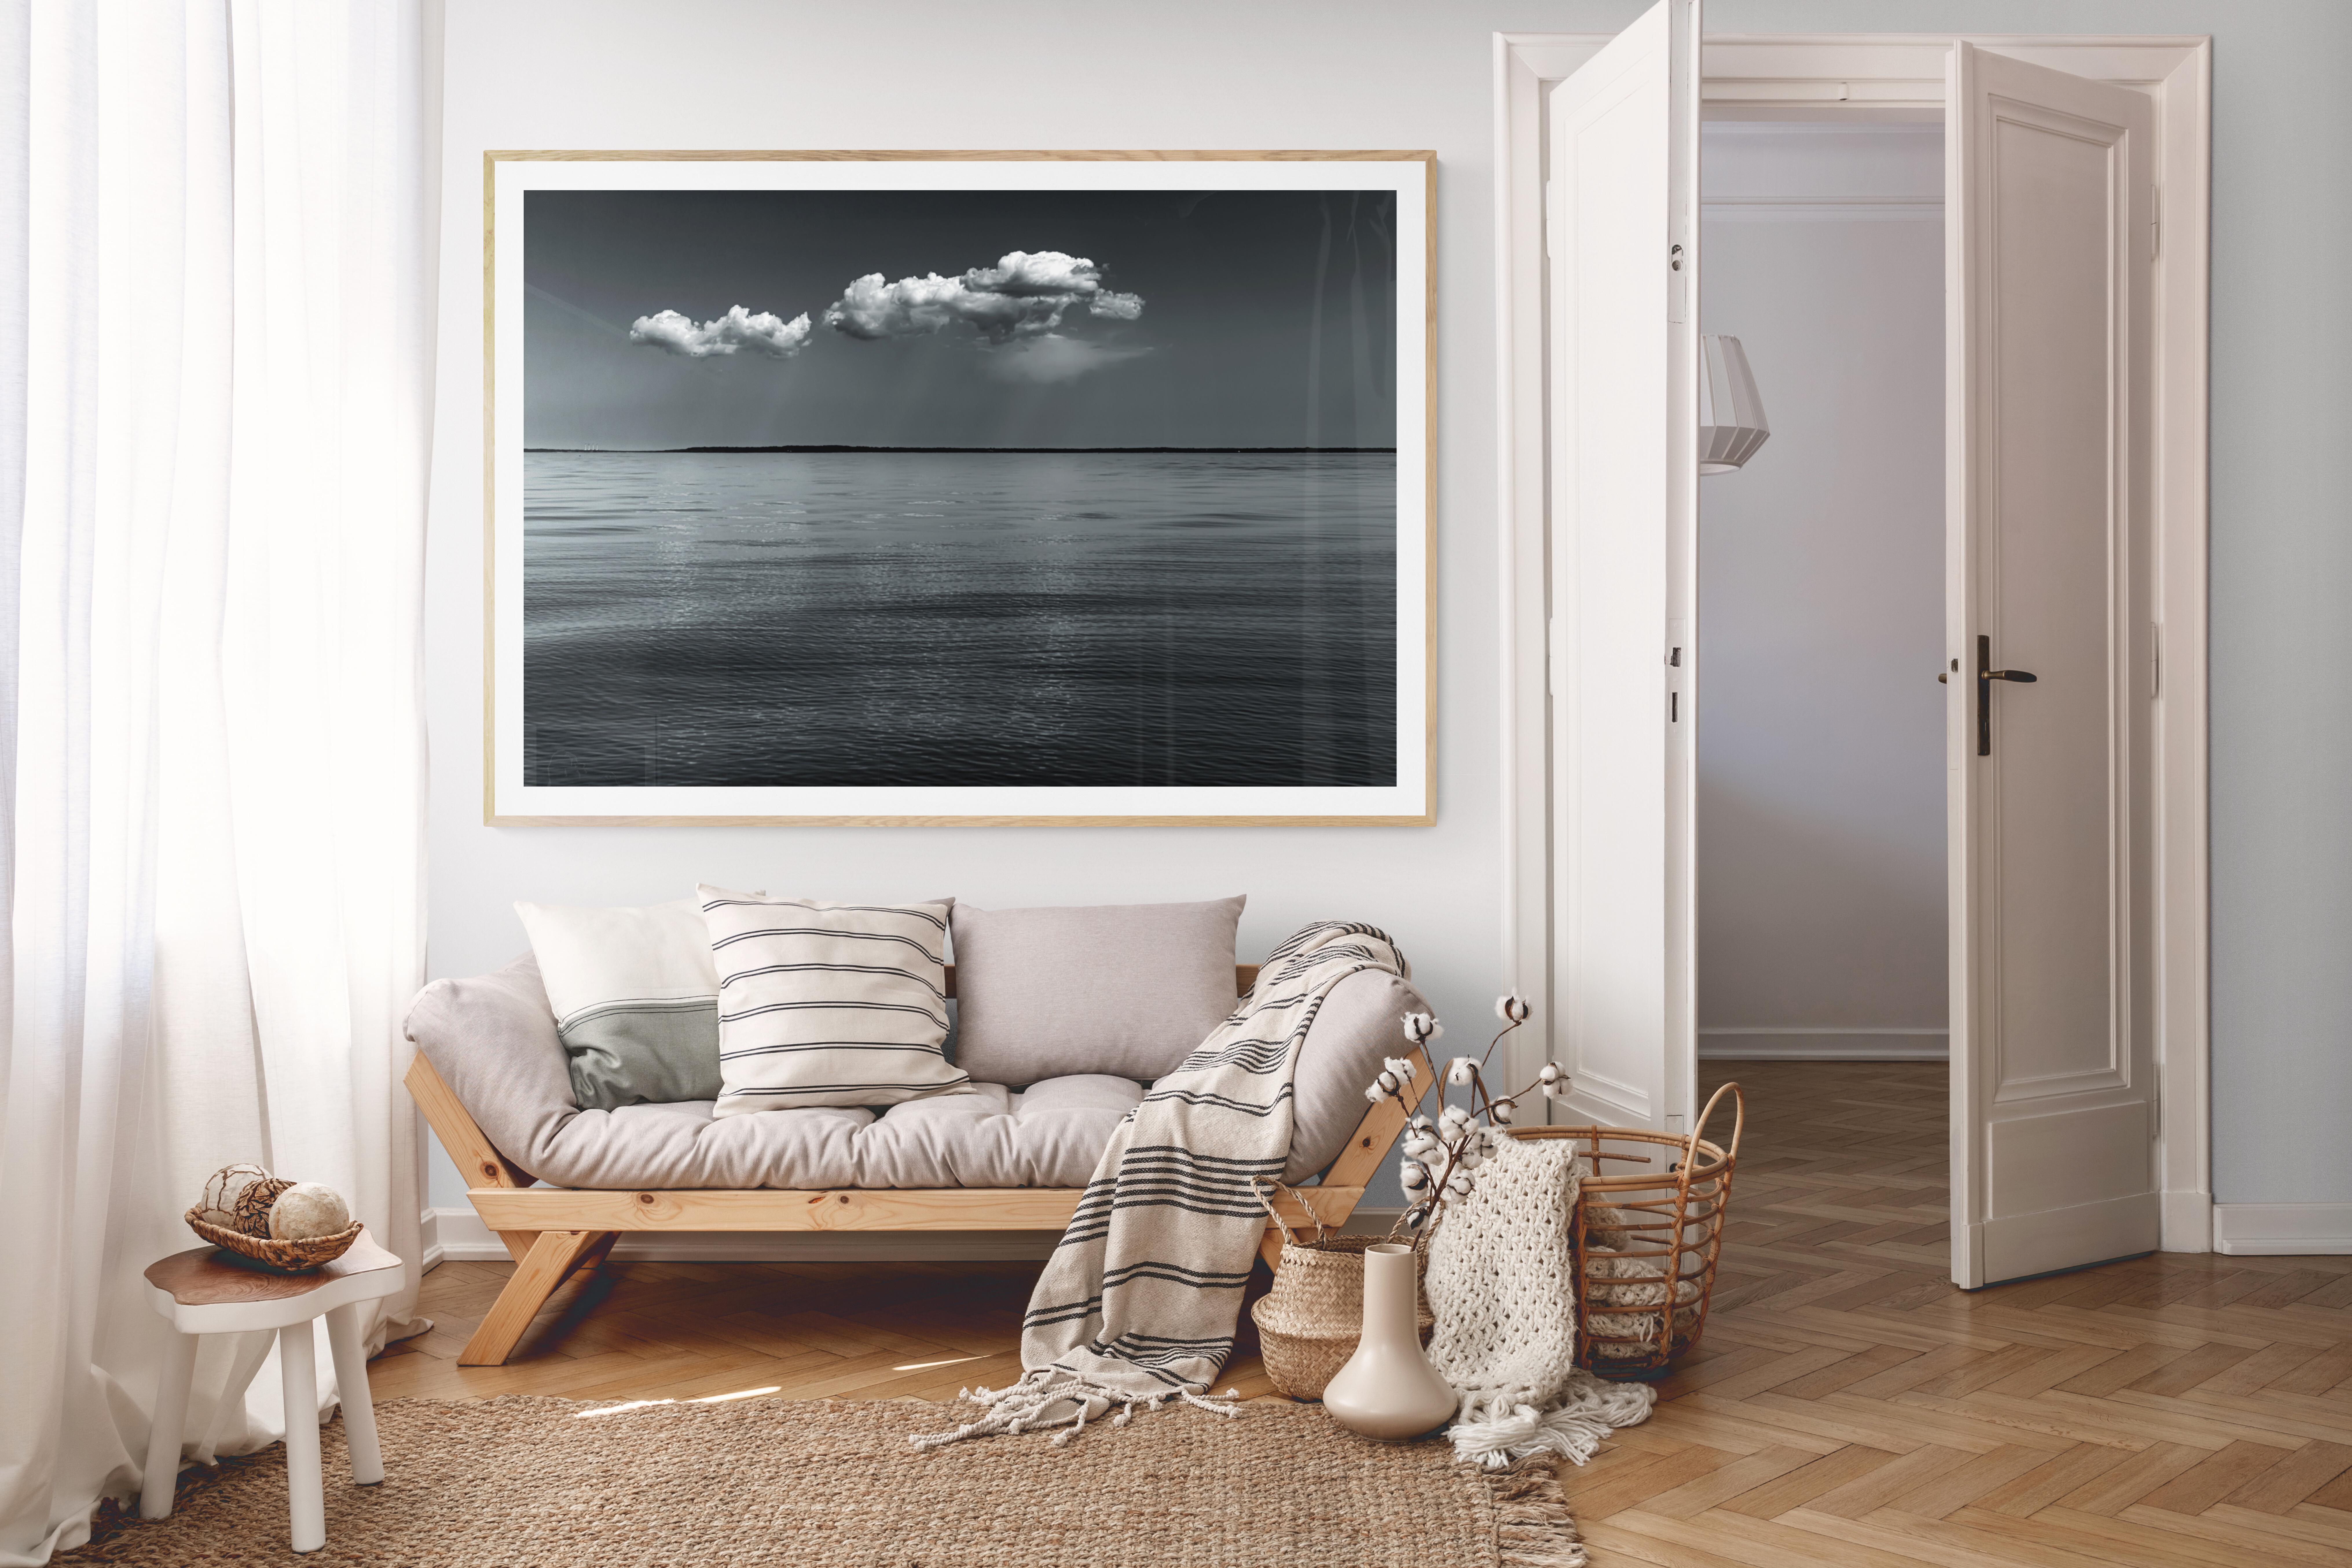 Schwarz-Weiß-Fotografie in limitierter Auflage – „Seewolken #2“ 30 x 40 – Photograph von Howard Lewis